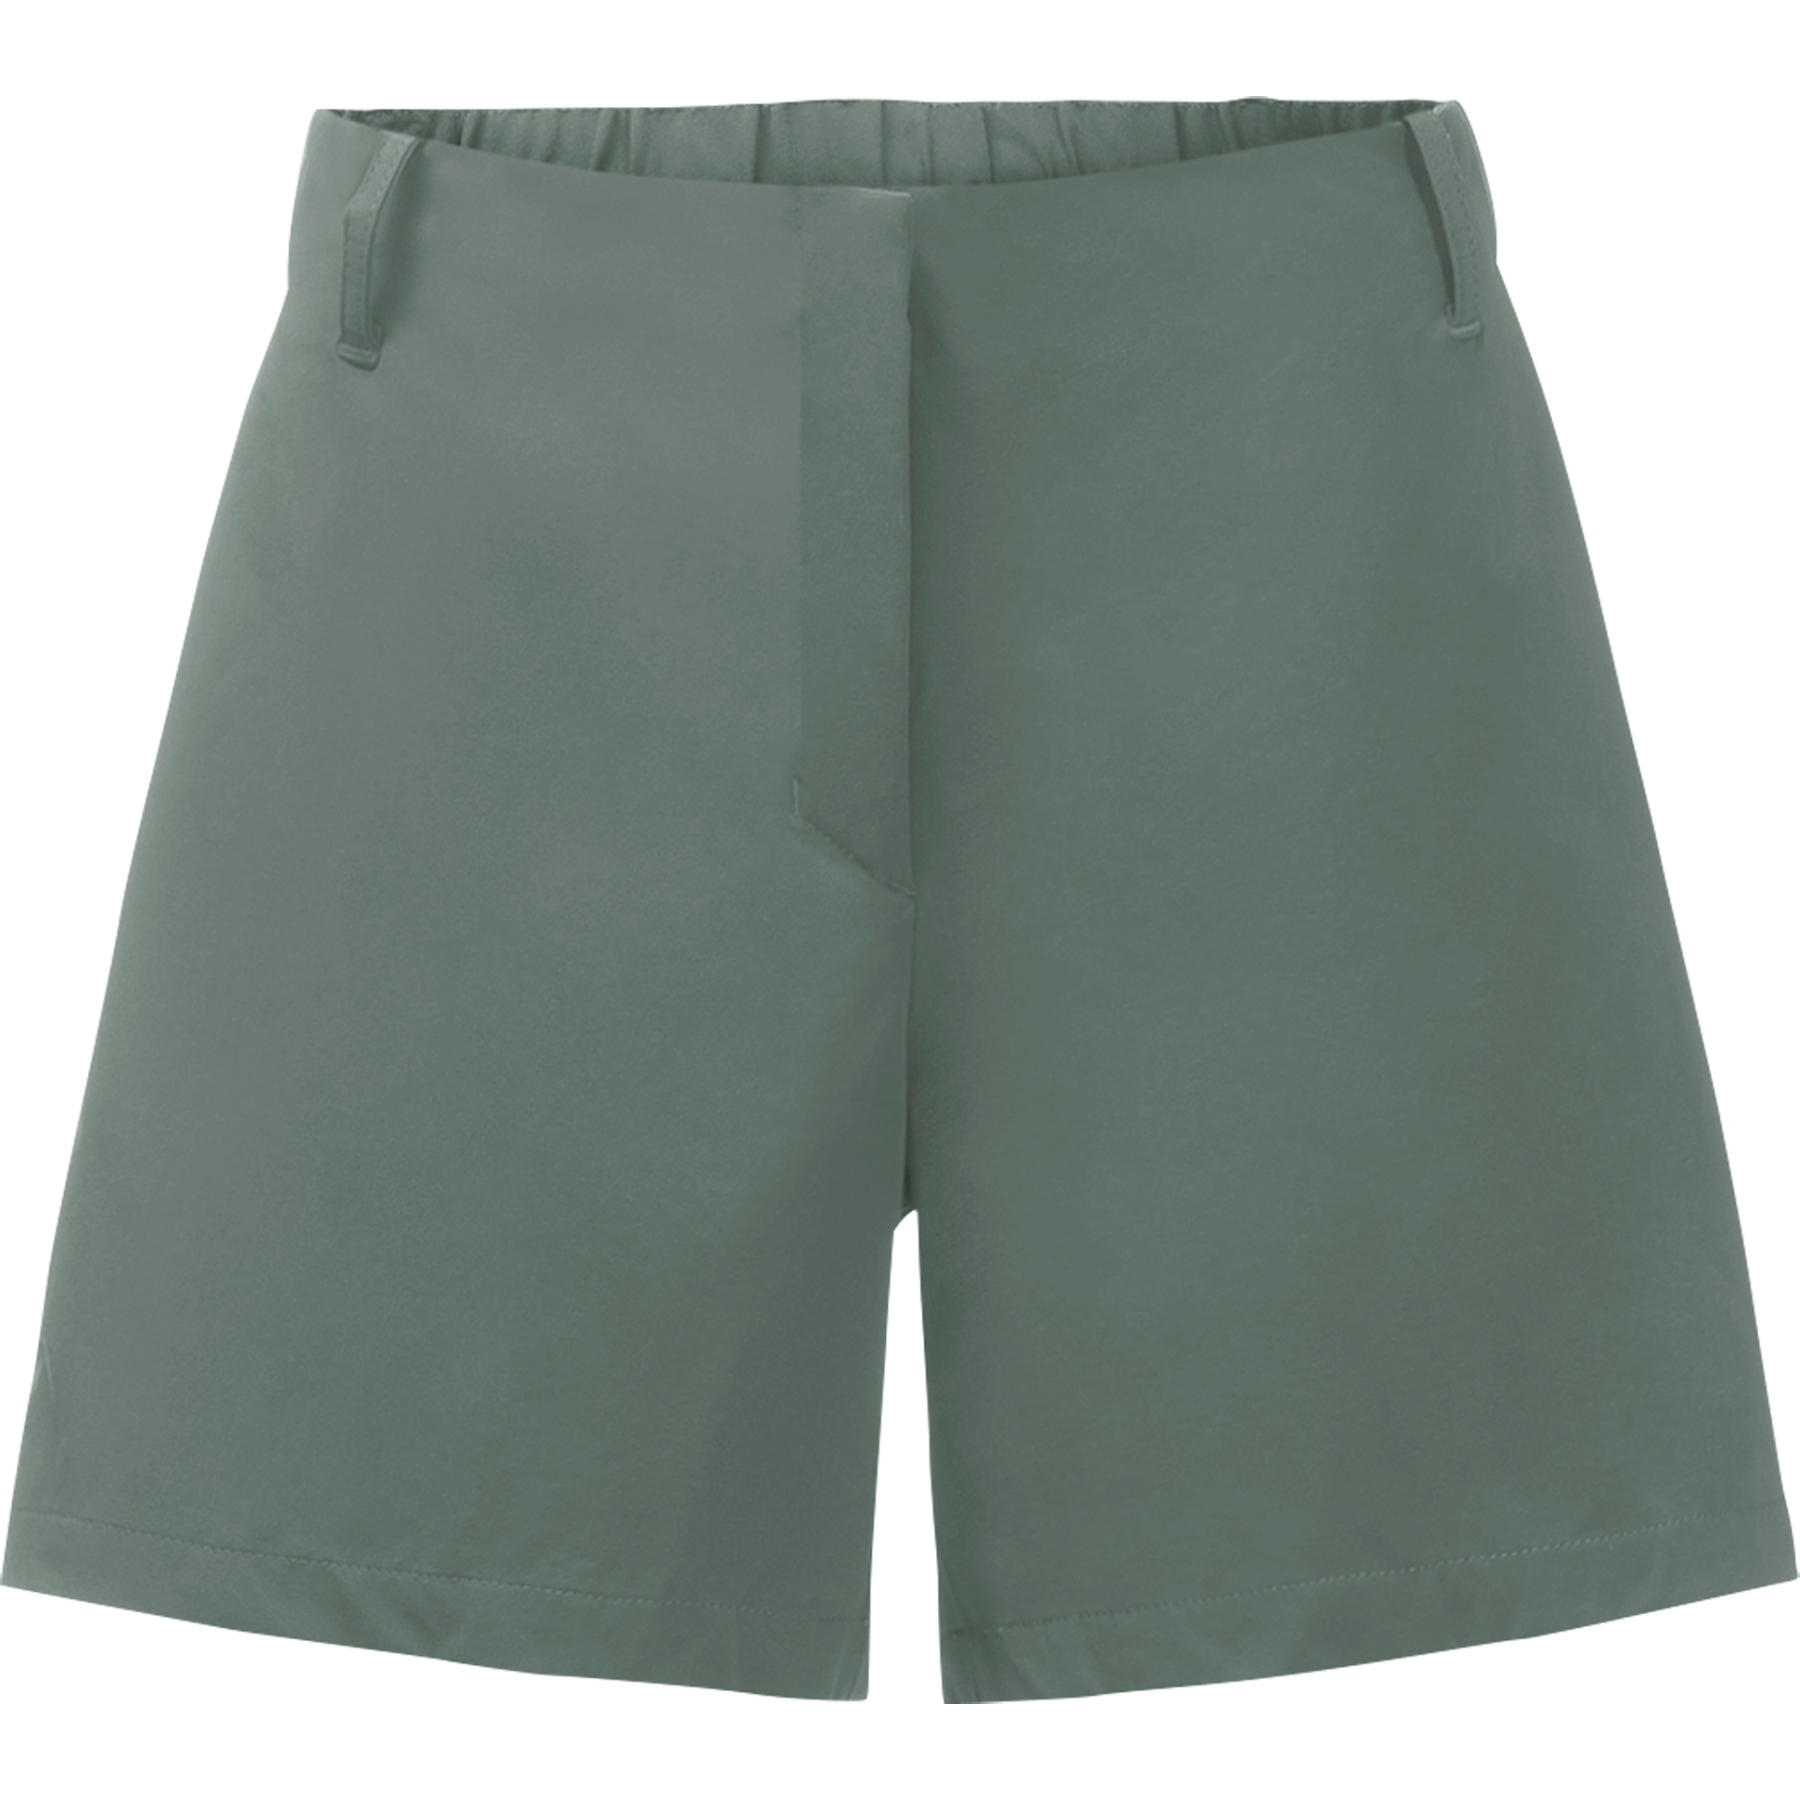 Produktbild von Jack Wolfskin Pack &amp; Go Damen Shorts - hedge green